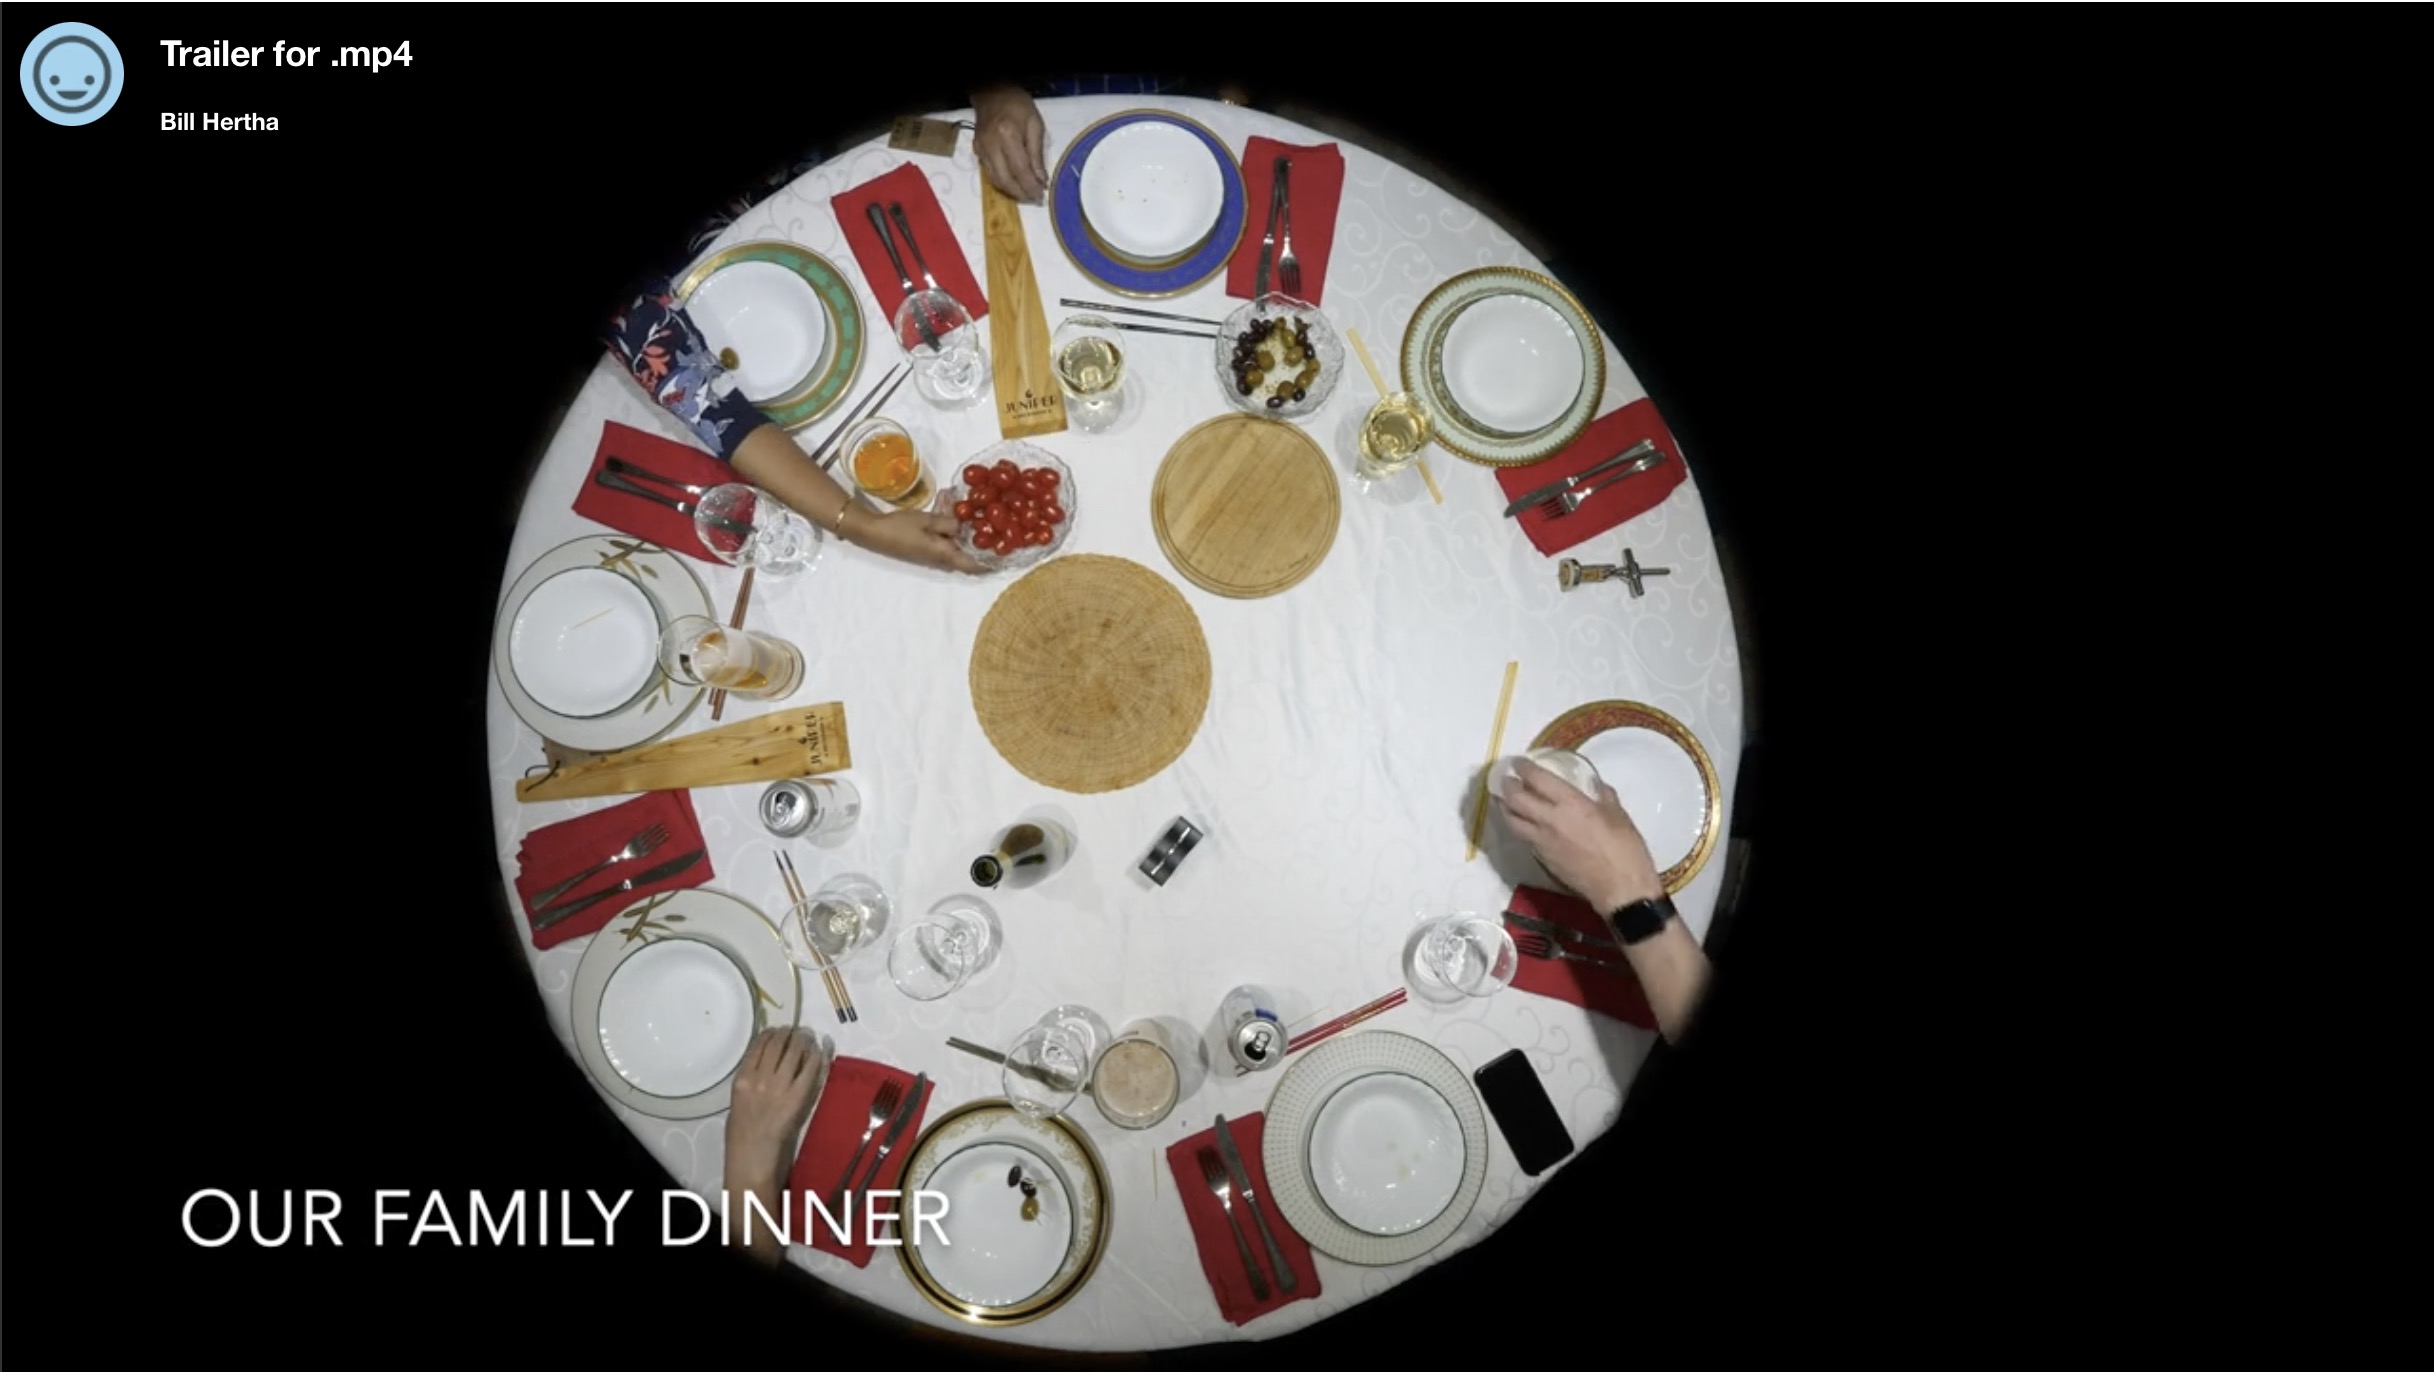 Trailer for the documentary “Dinner”